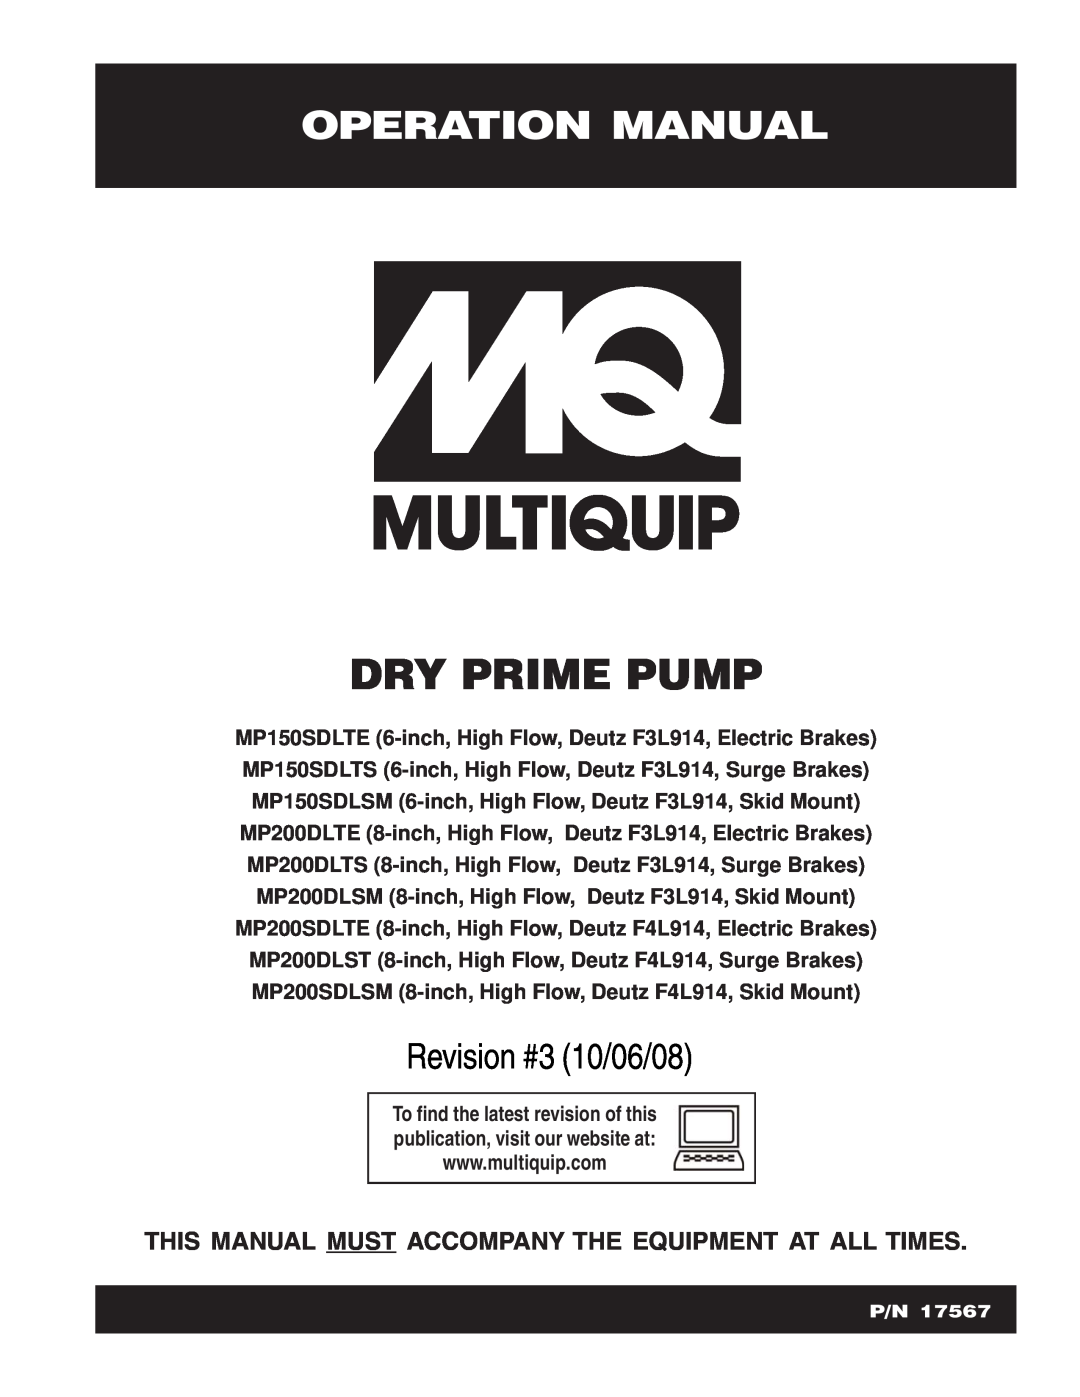 Multiquip MP150SDLTS, MP200DLTE, MP150SDLTE, MP200SDLSM, MP200DLSM operation manual Dry Prime Pump, Revision #3 10/06/08 